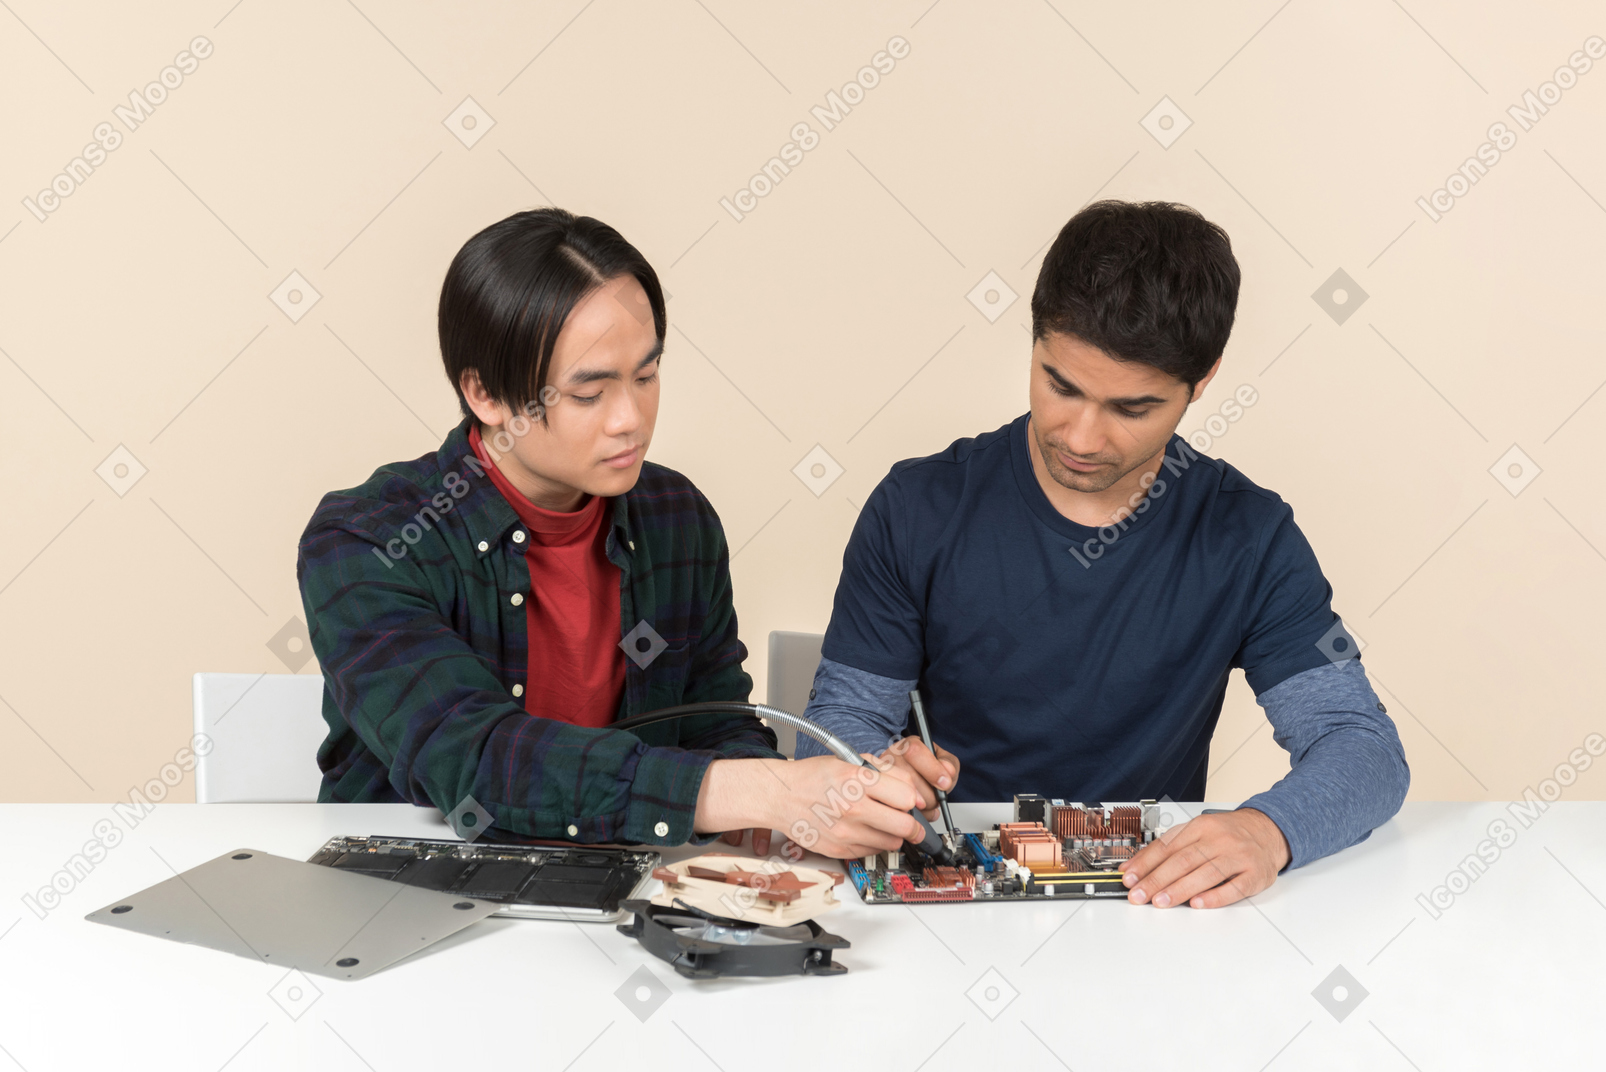 Dois jovens geeks com alguns detalhes sobre a mesa com alguns problemas